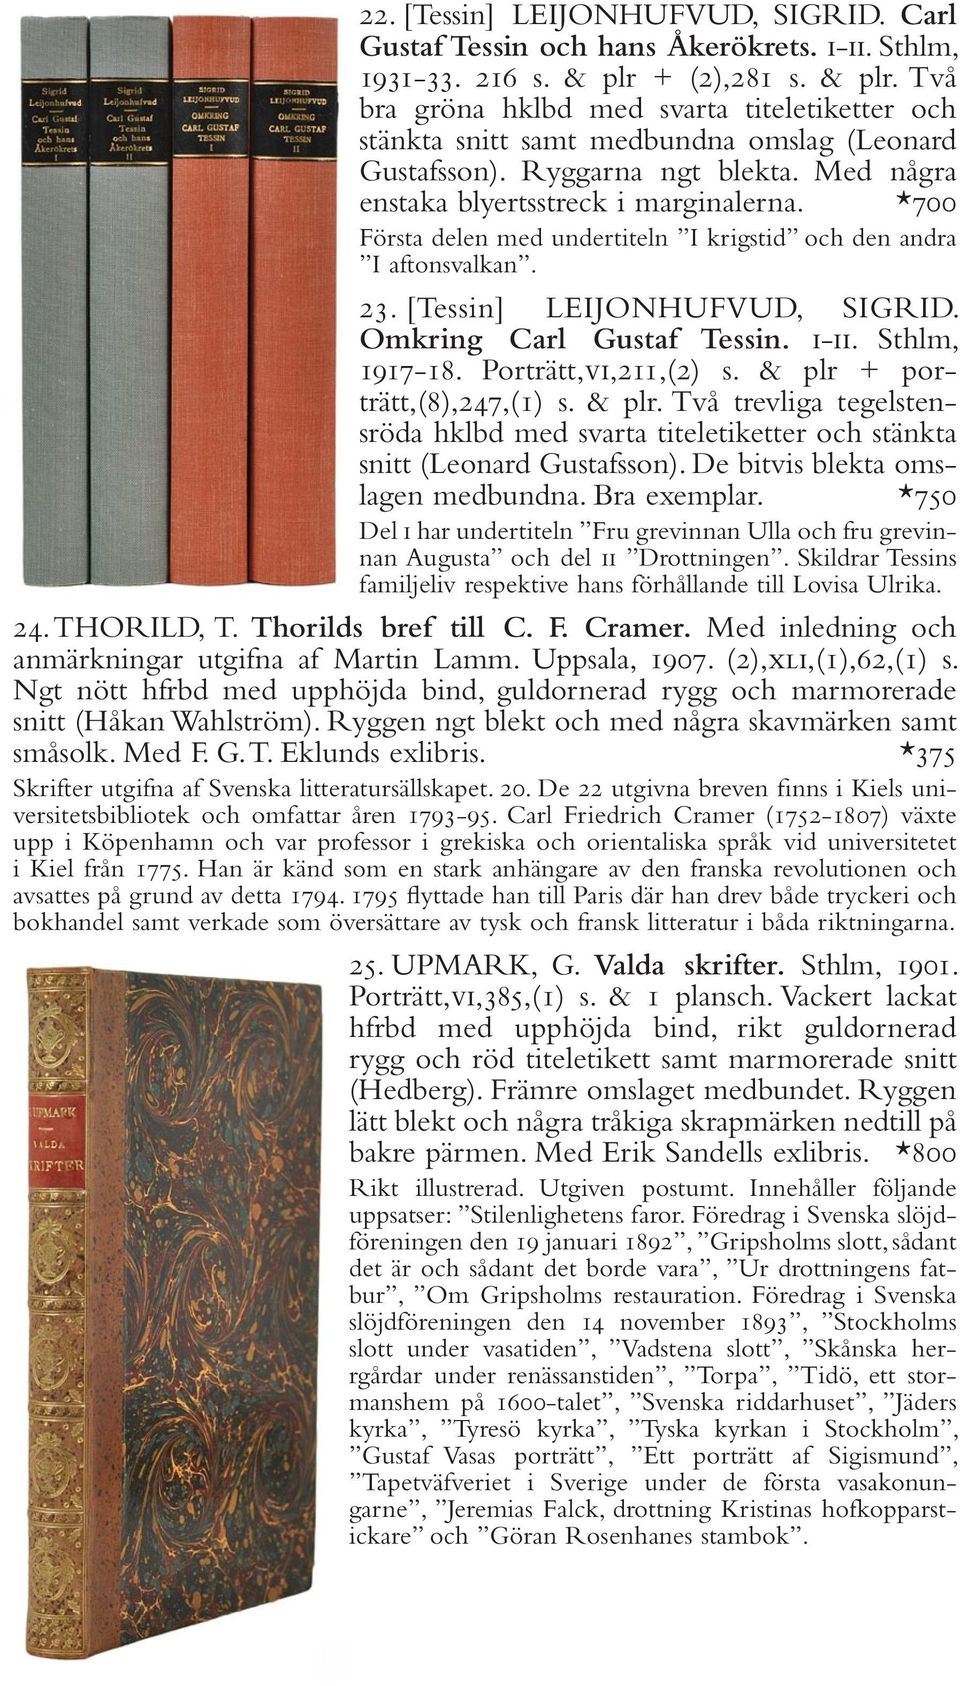 *700 Första delen med undertiteln I krigstid och den andra I aftonsvalkan. 23. [Tessin] LEIJONHUFVUD, SIGRID. Omkring Carl Gustaf Tessin. i-ii. Sthlm, 1917-18. Porträtt,vi,211,(2) s.